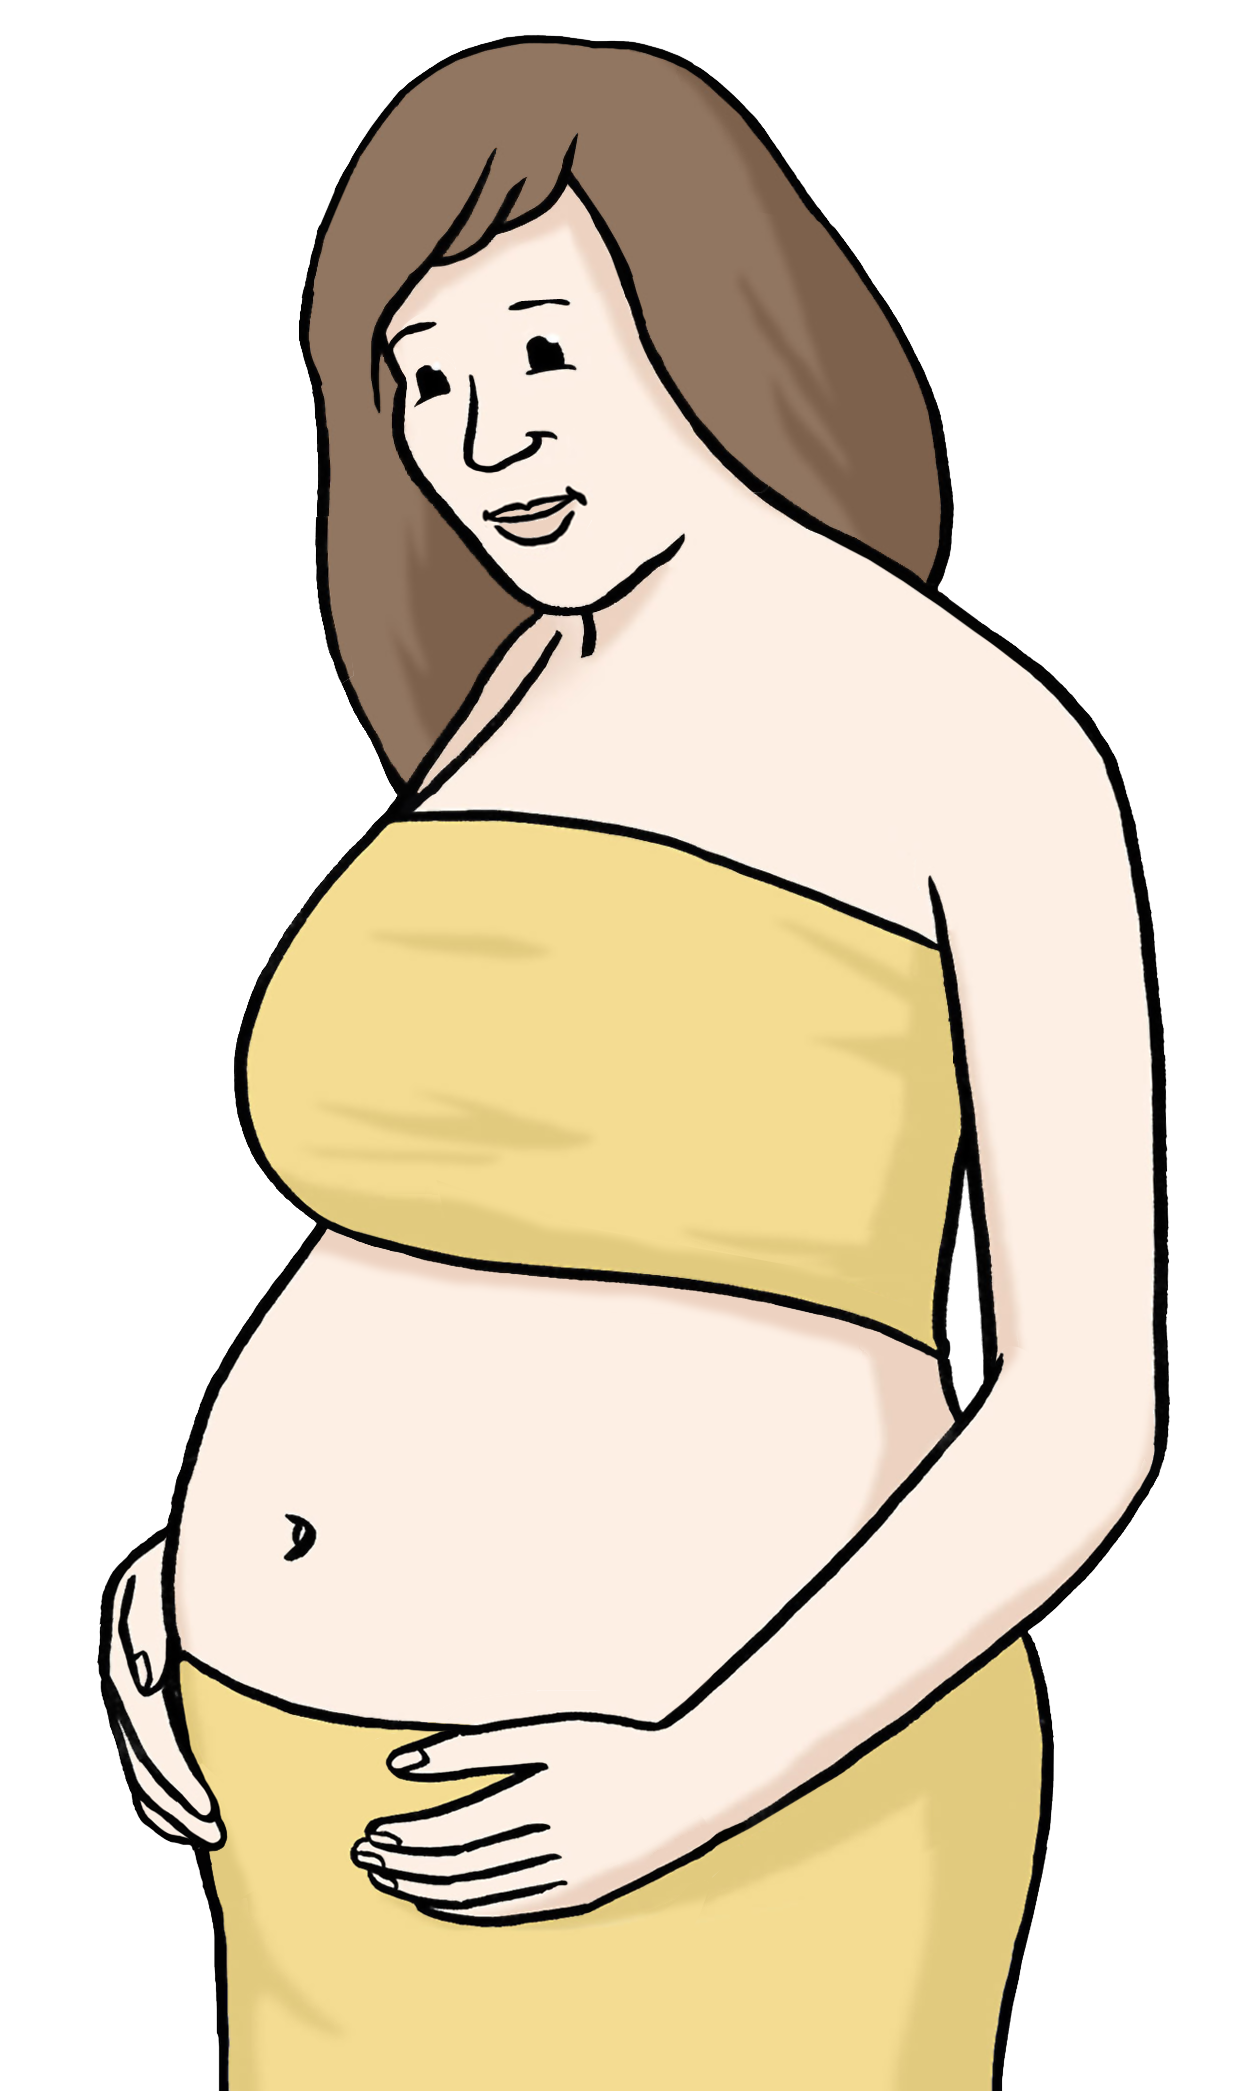 Grafik: Darstellung einer schwangeren Frau, die ihren Bauch hält